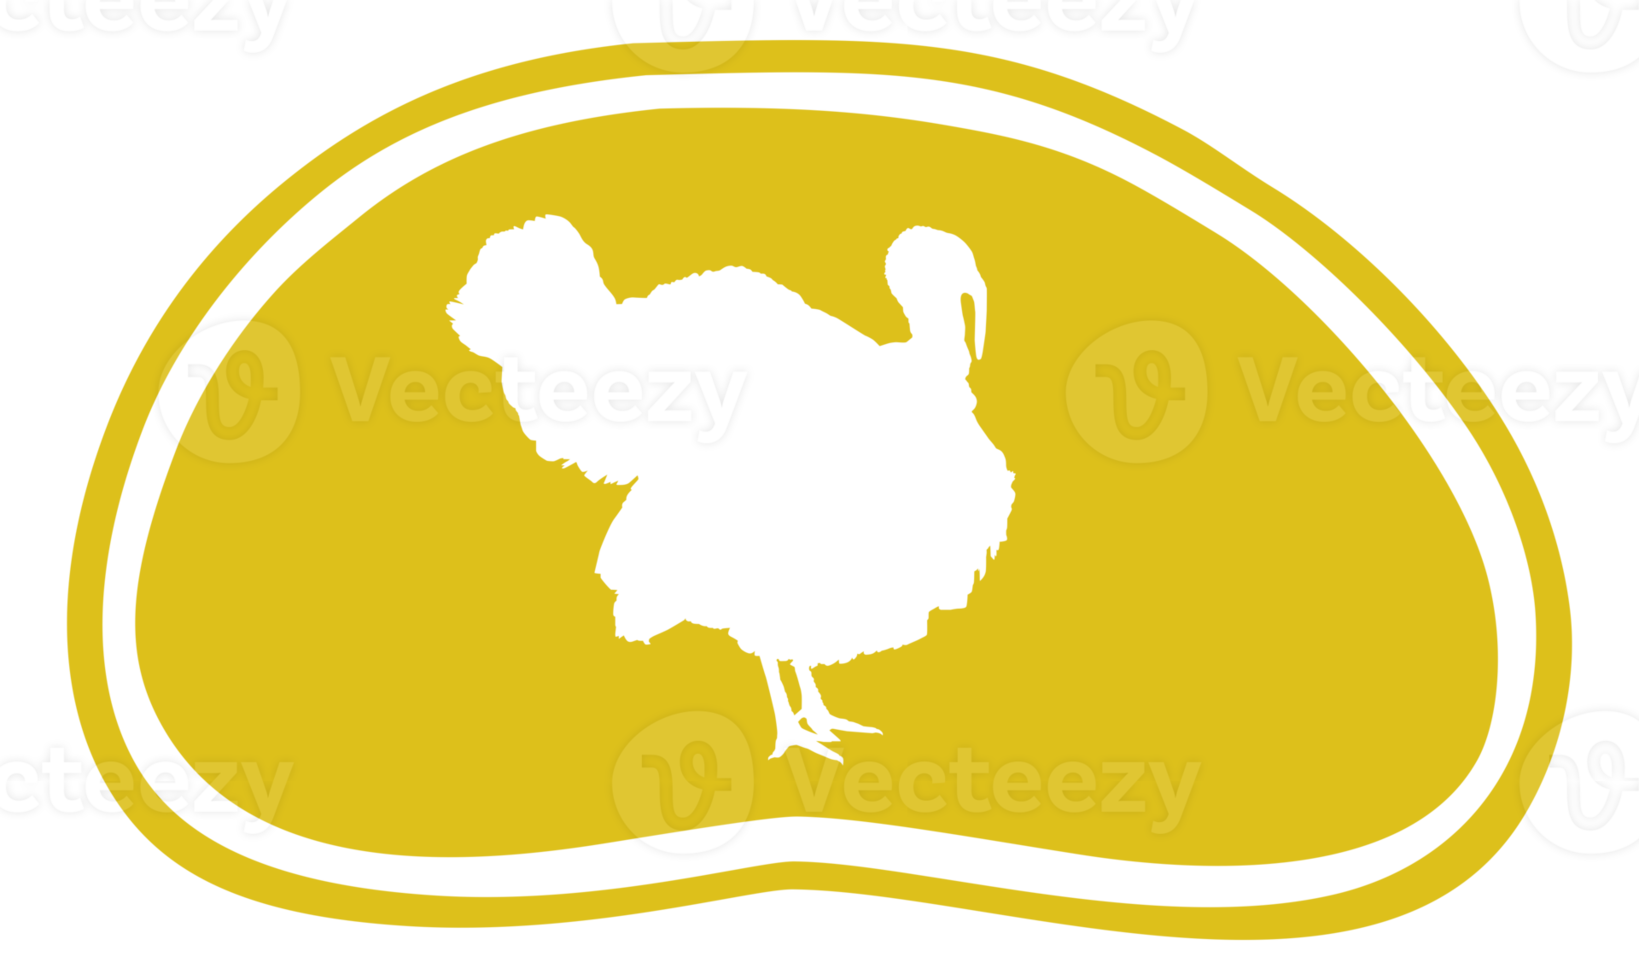 Turquía silueta en el carne forma para logotipo, etiqueta, marca, etiqueta, pictograma o gráfico diseño elemento. el Turquía es un grande pájaro en el género meleagris. formato png